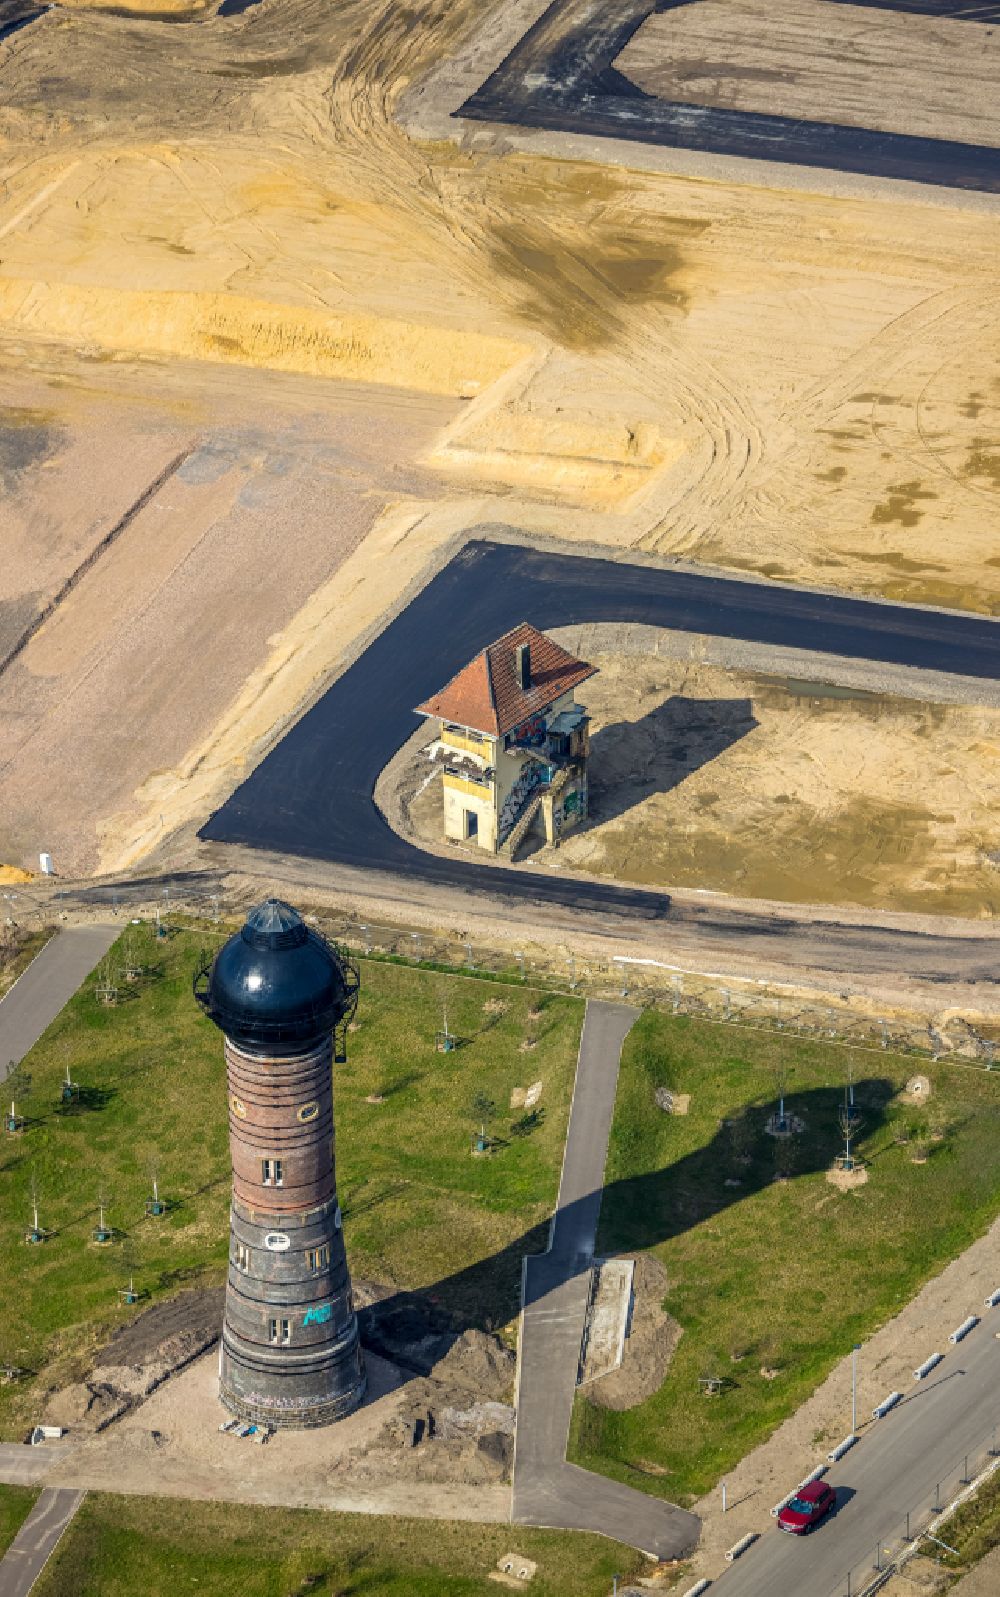 Duisburg aus der Vogelperspektive: Industriedenkmal Wasserturm in Duisburg im Bundesland Nordrhein-Westfalen, Deutschland